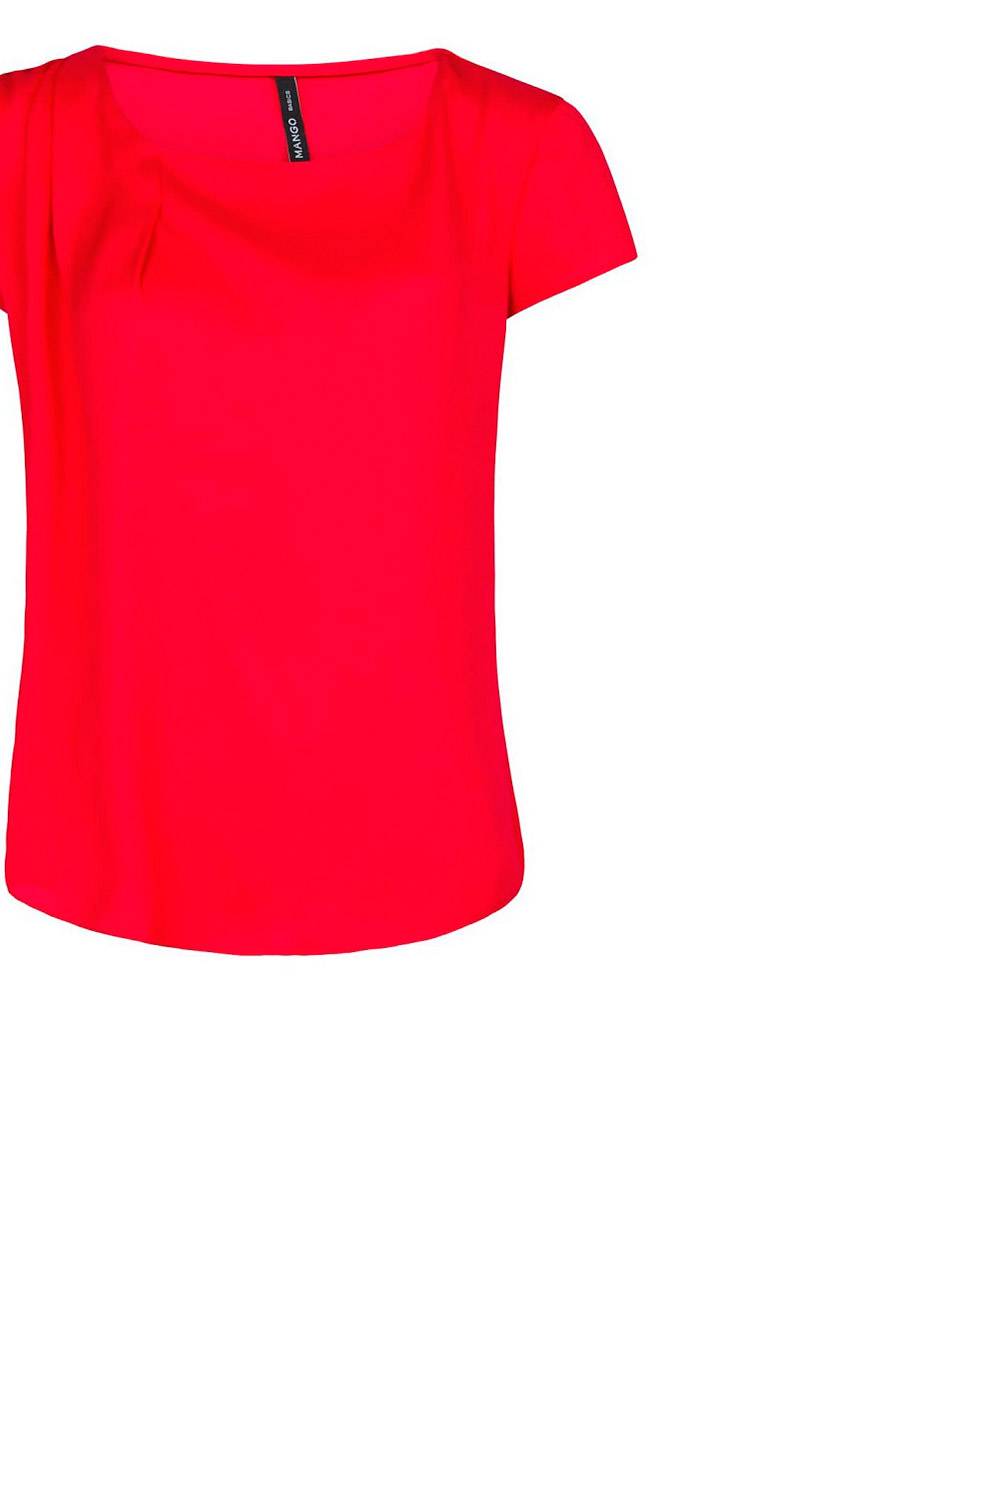 MANGO - Blusa Crepé Rojo